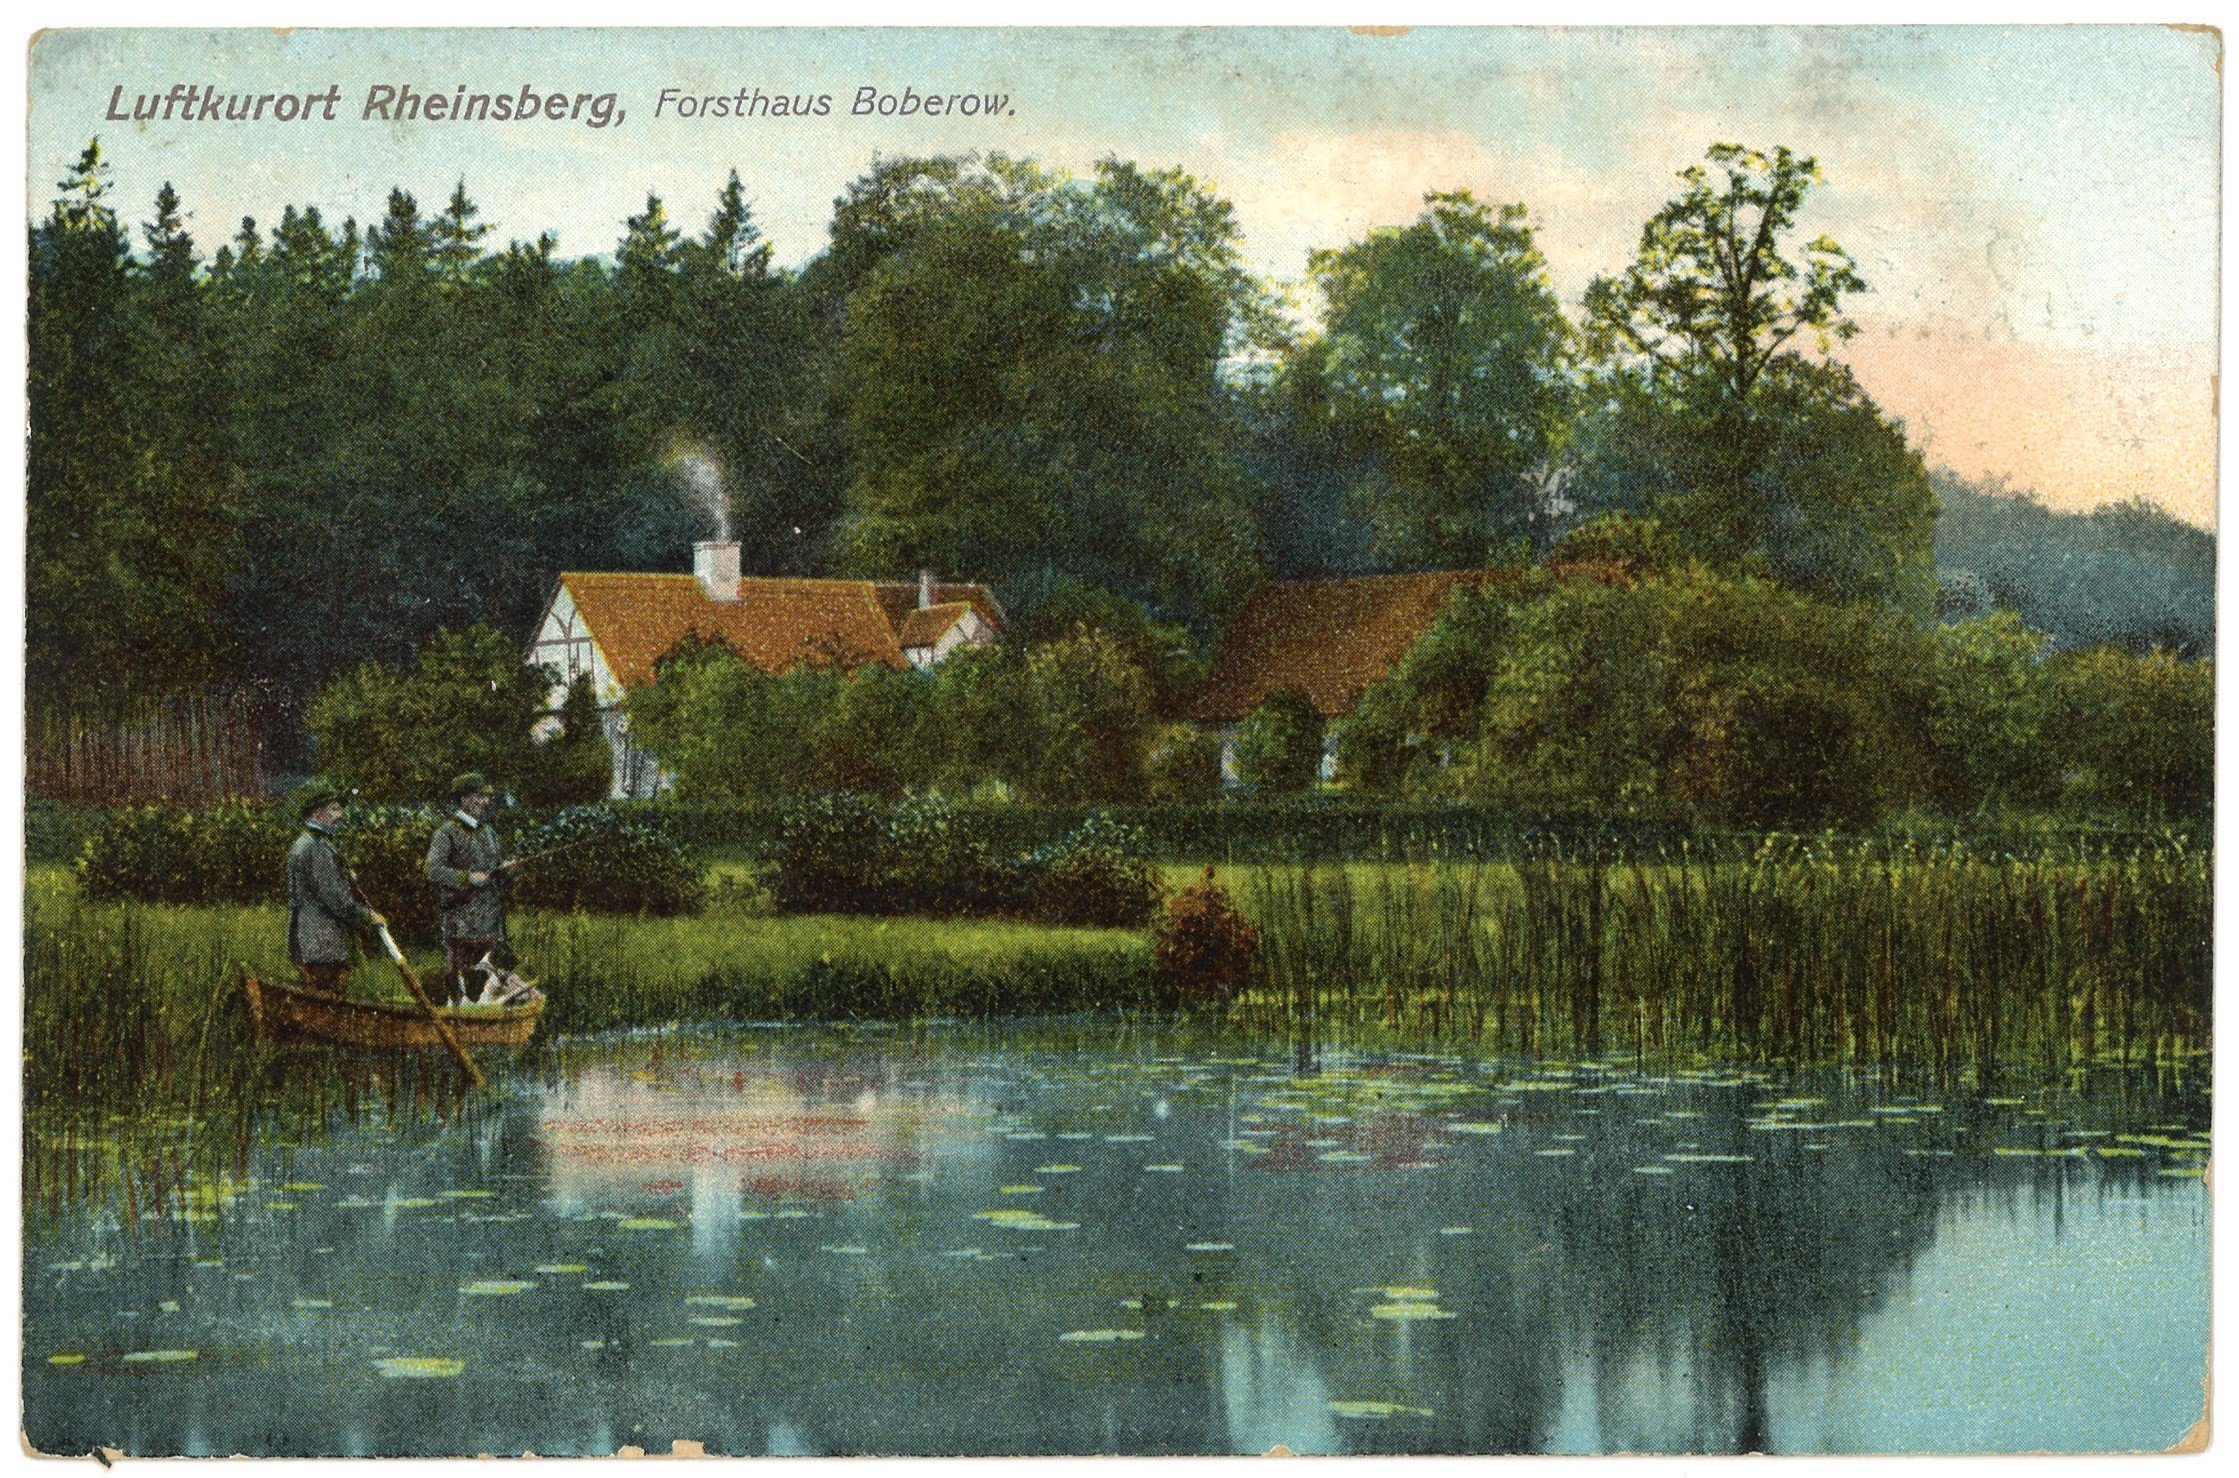 Boberow bei Rheinsberg: Forsthaus von Südwesten (Landesgeschichtliche Vereinigung für die Mark Brandenburg e.V. CC BY)